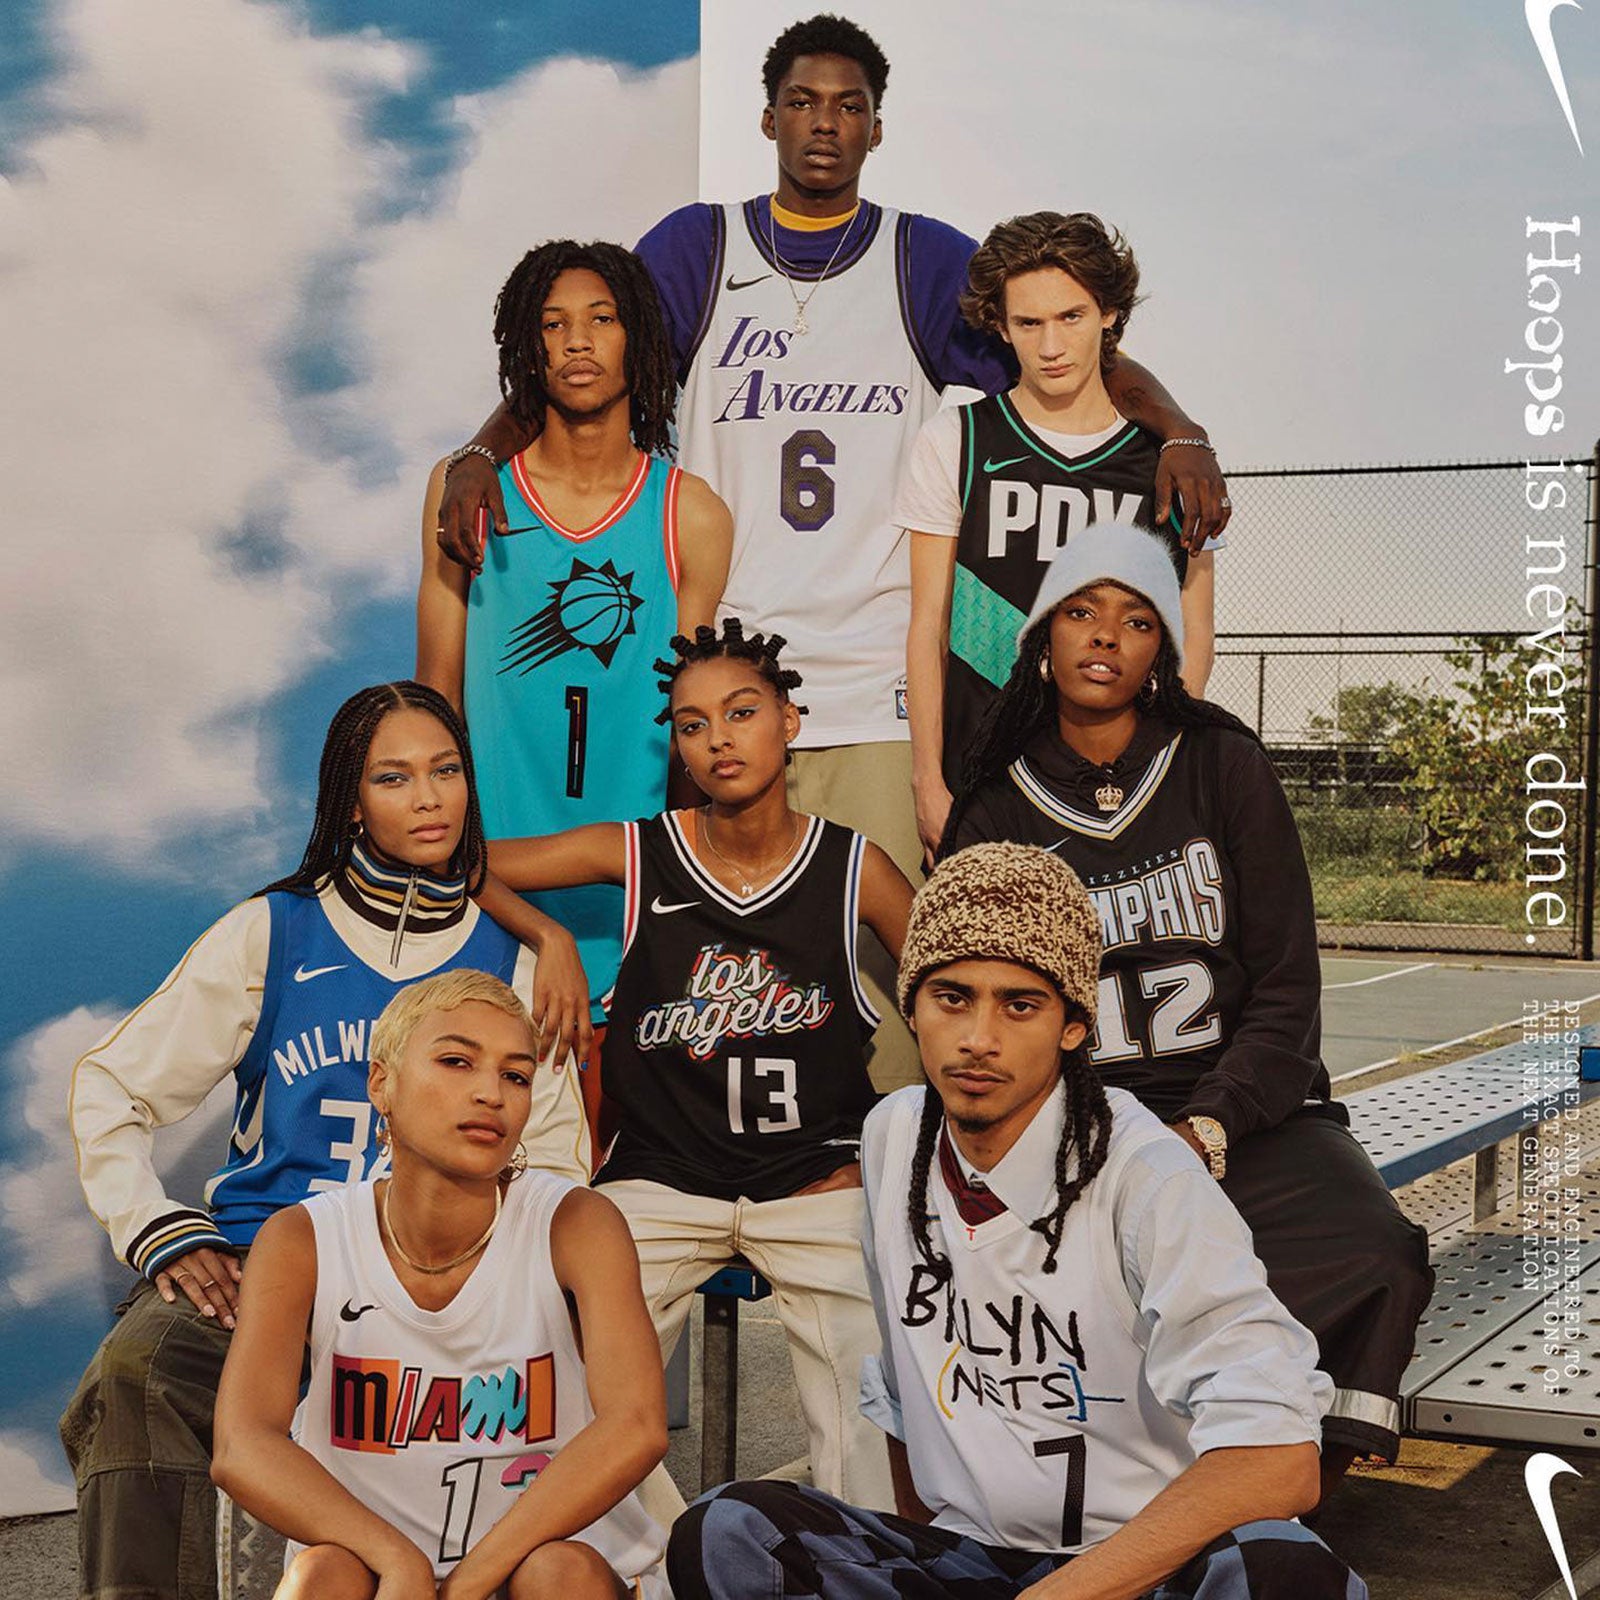 Memphis Grizzlies Jerseys & Teamwear, NBA Merch